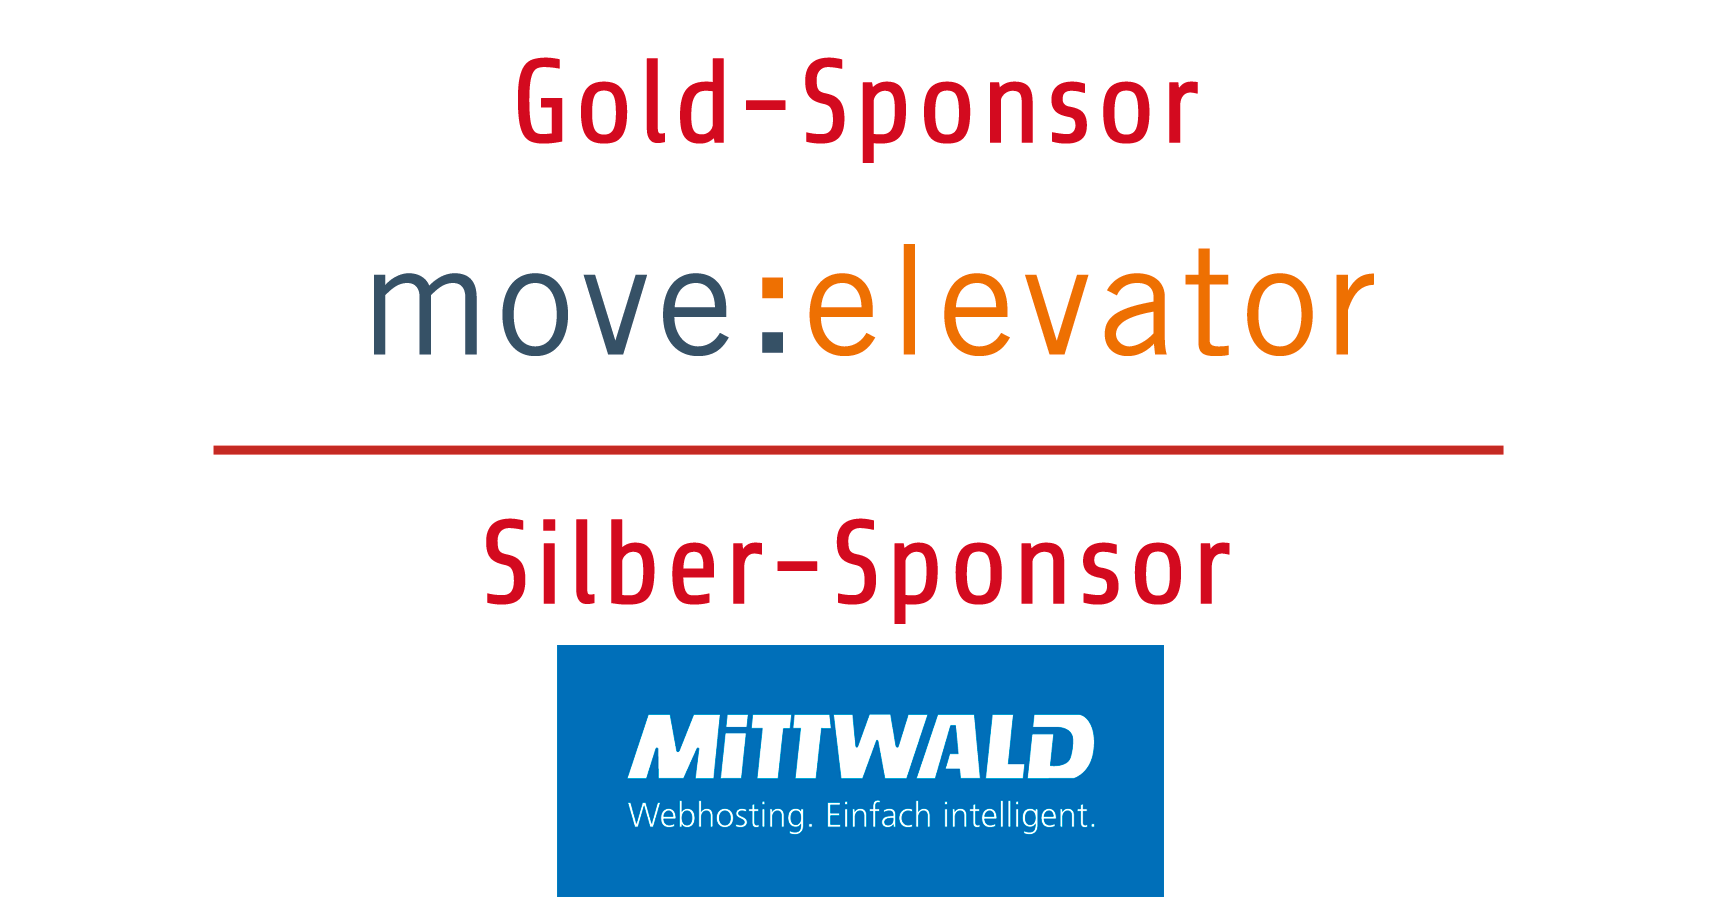 Goldsponsor move:elevator und Silbersponsor Mittwald